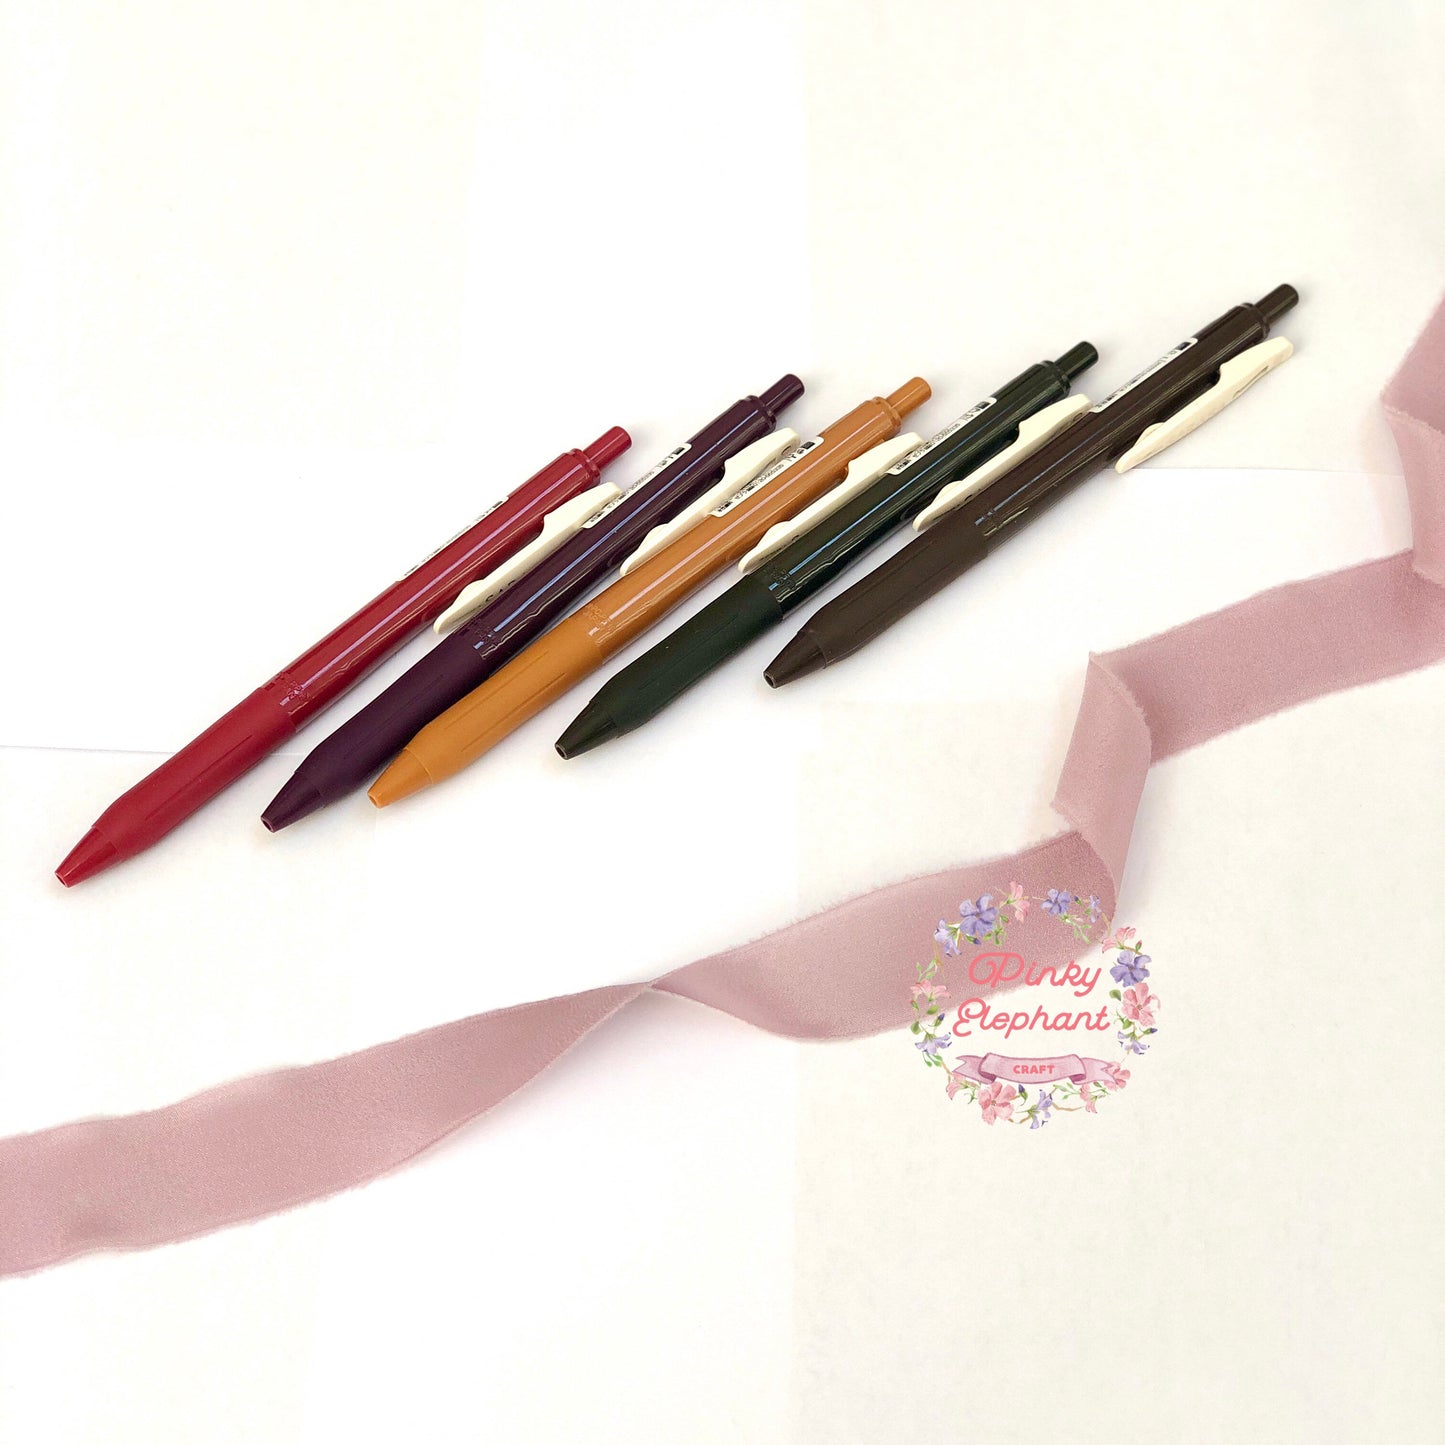 Zebra Sarasa Vintage Click Gel Pen, 0.5mm, multiple colors available